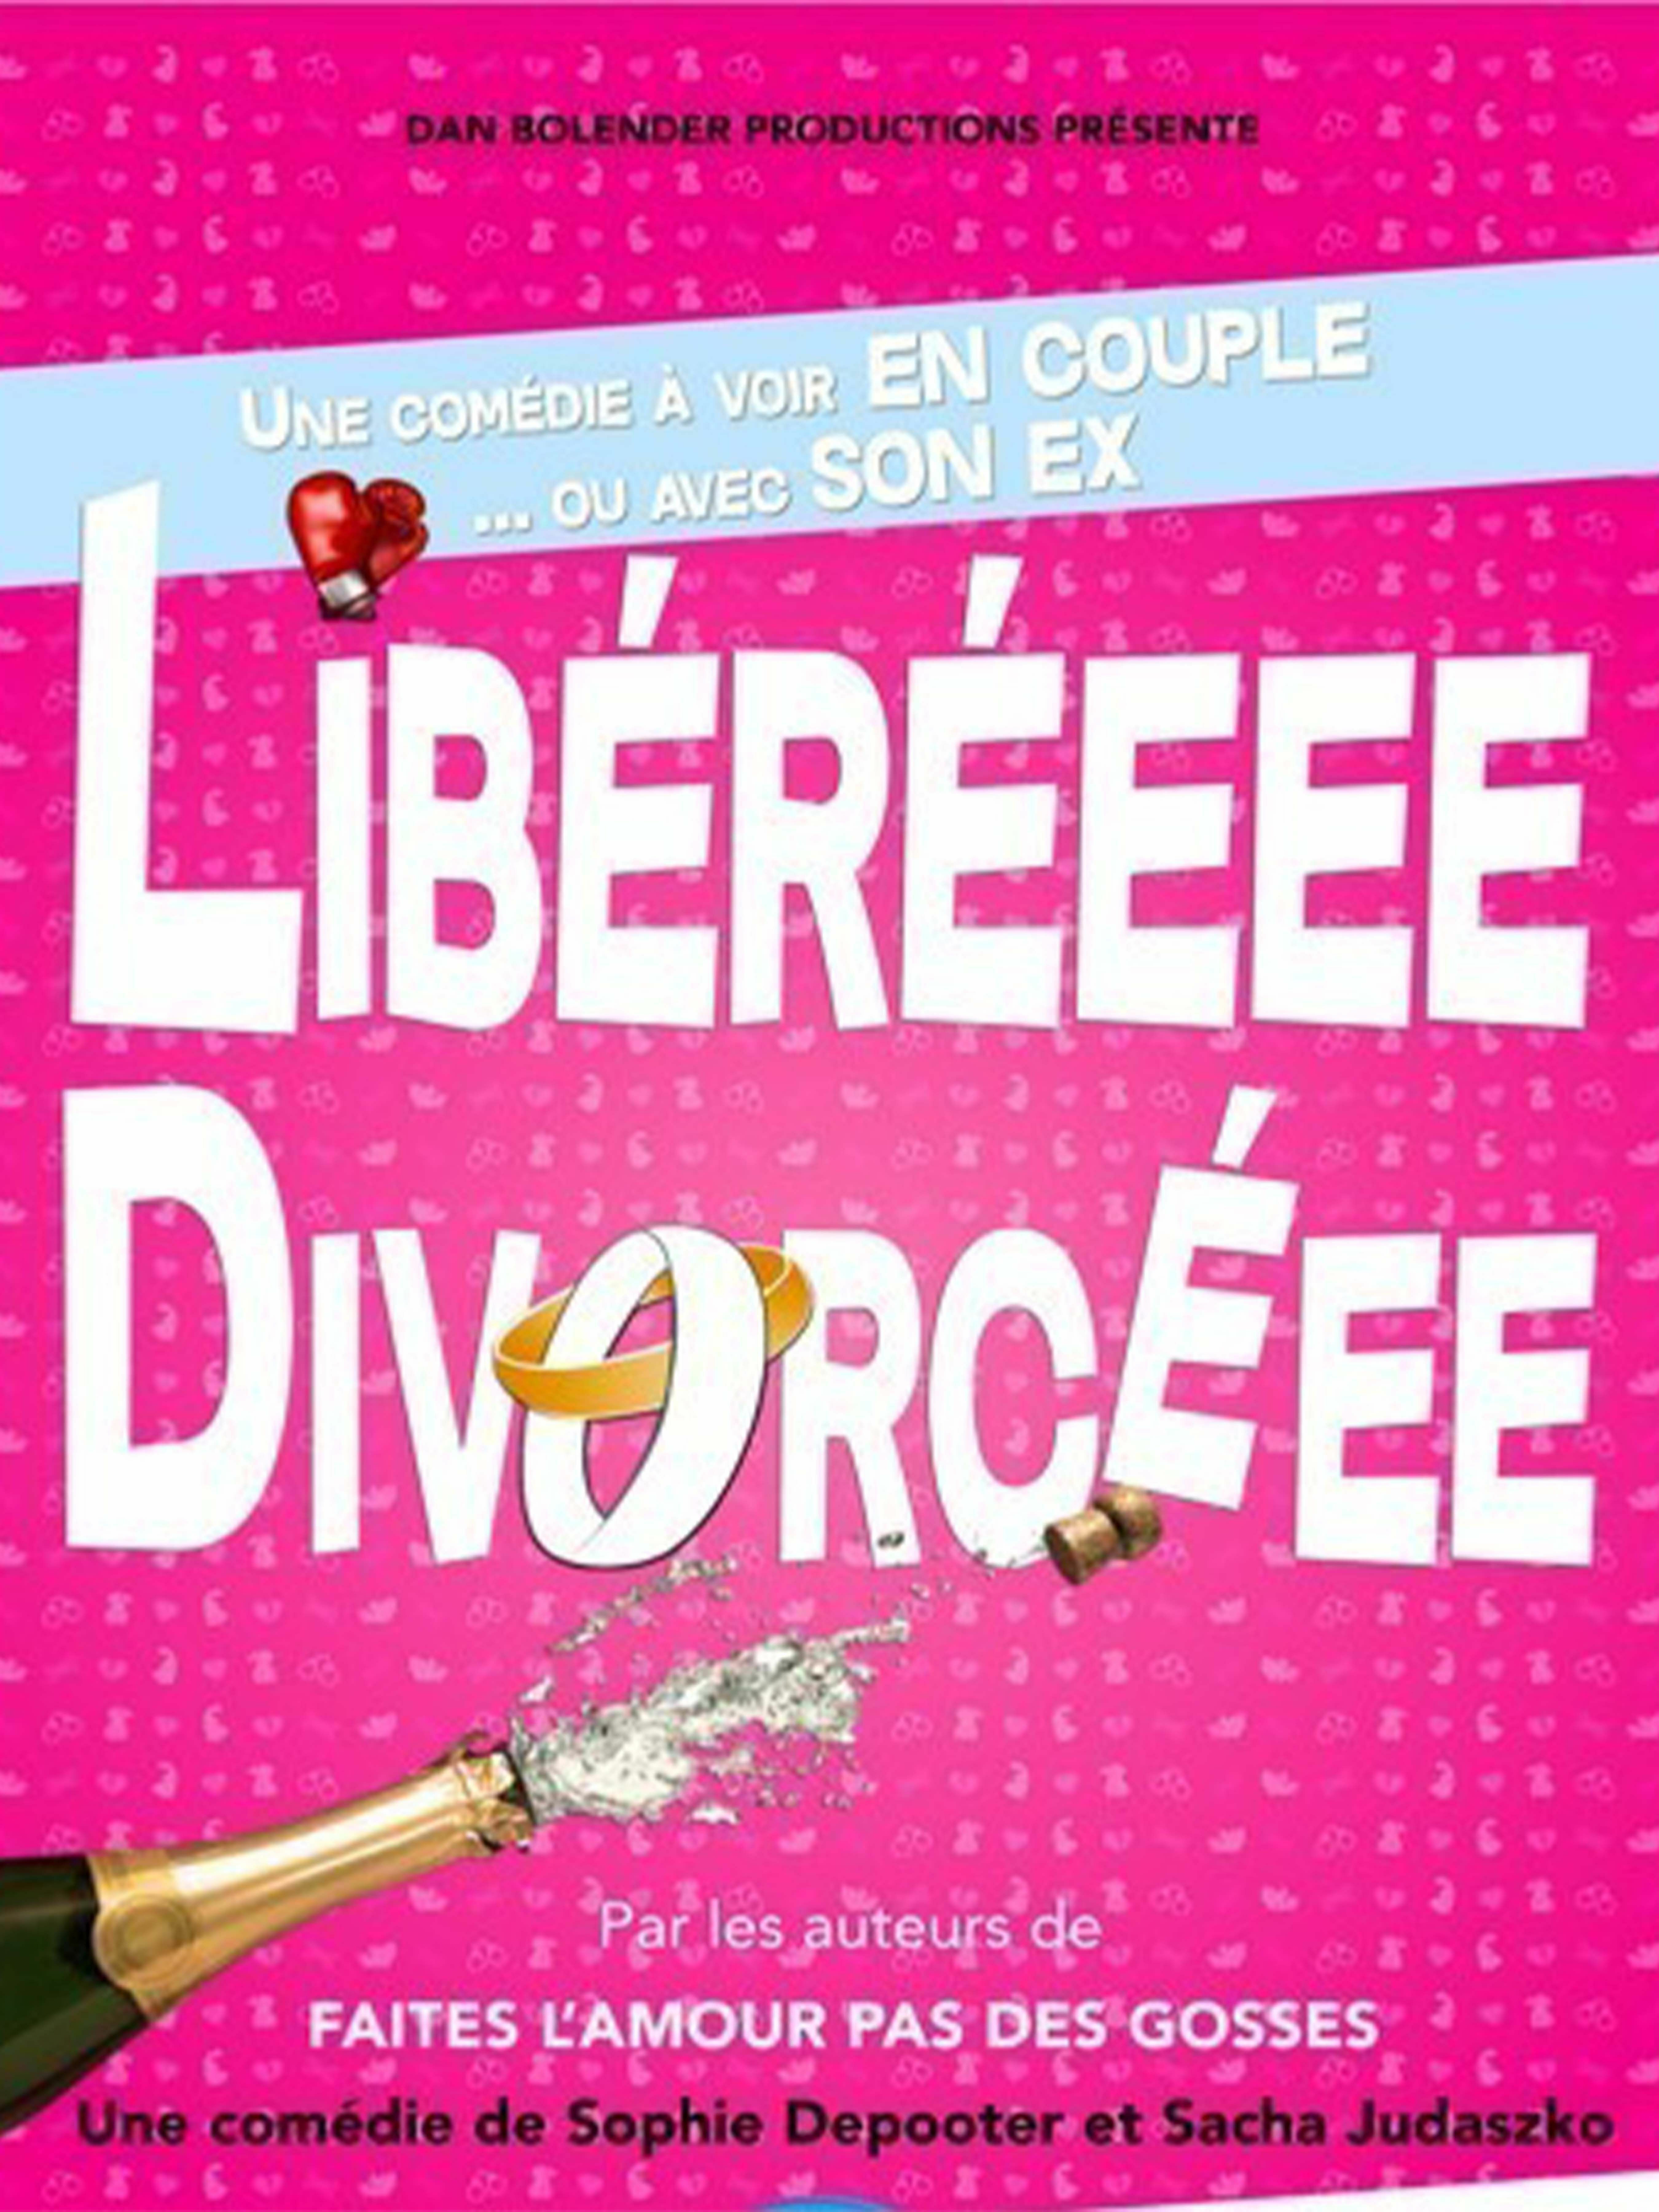 Libéréee divorcéee - Théâtre